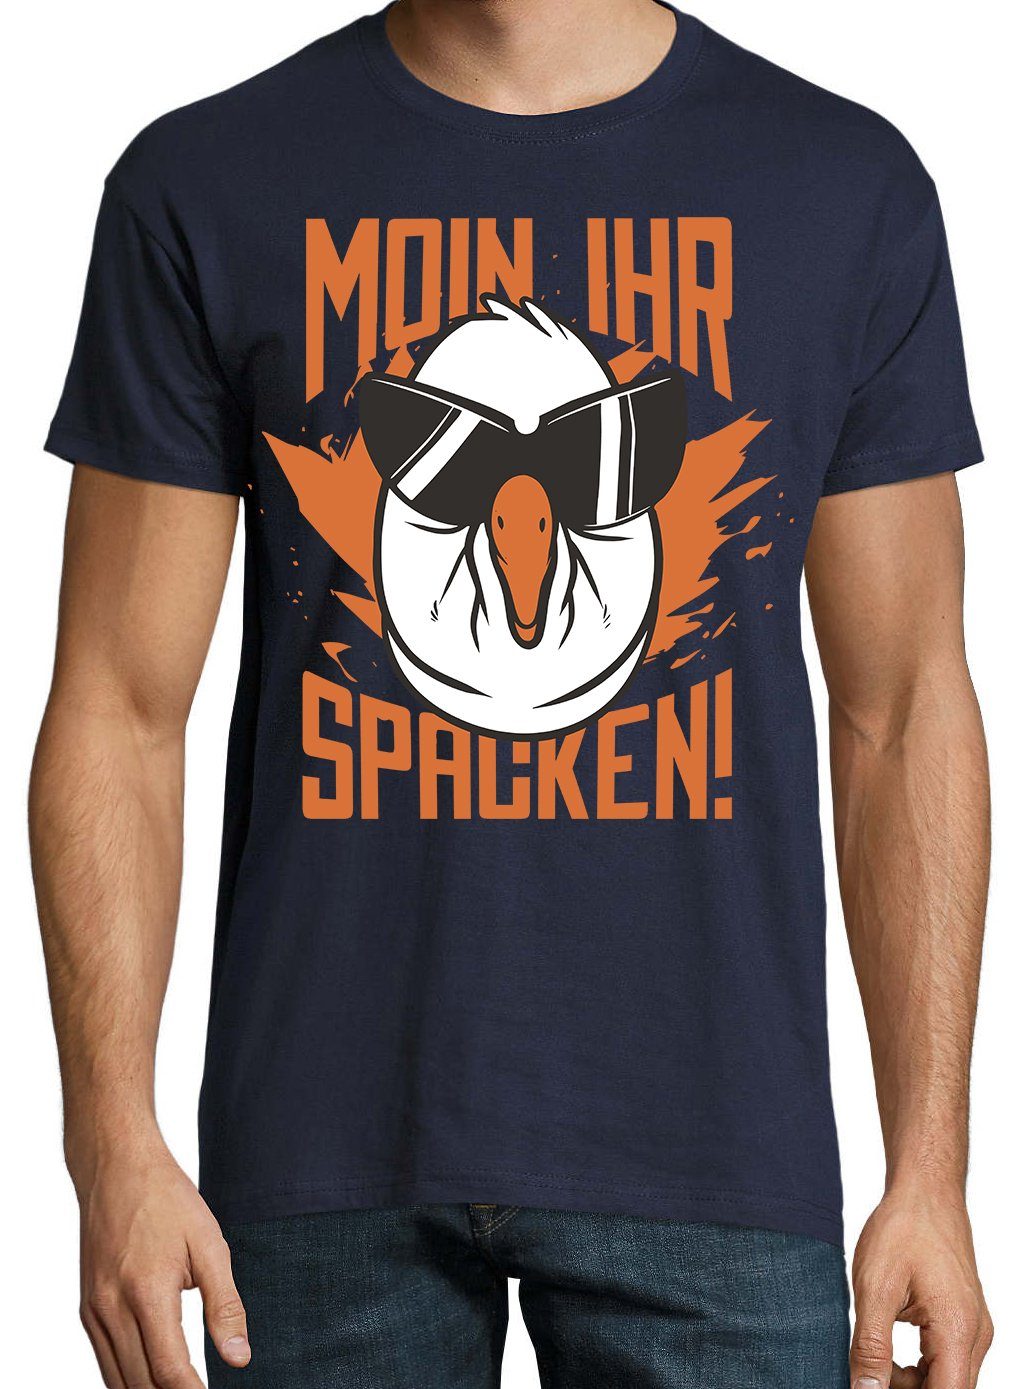 mit Print-Shirt Navyblau Aufdruck Spruch Youth T-Shirt Spacken lustigem Designz Moin Herren Ihr